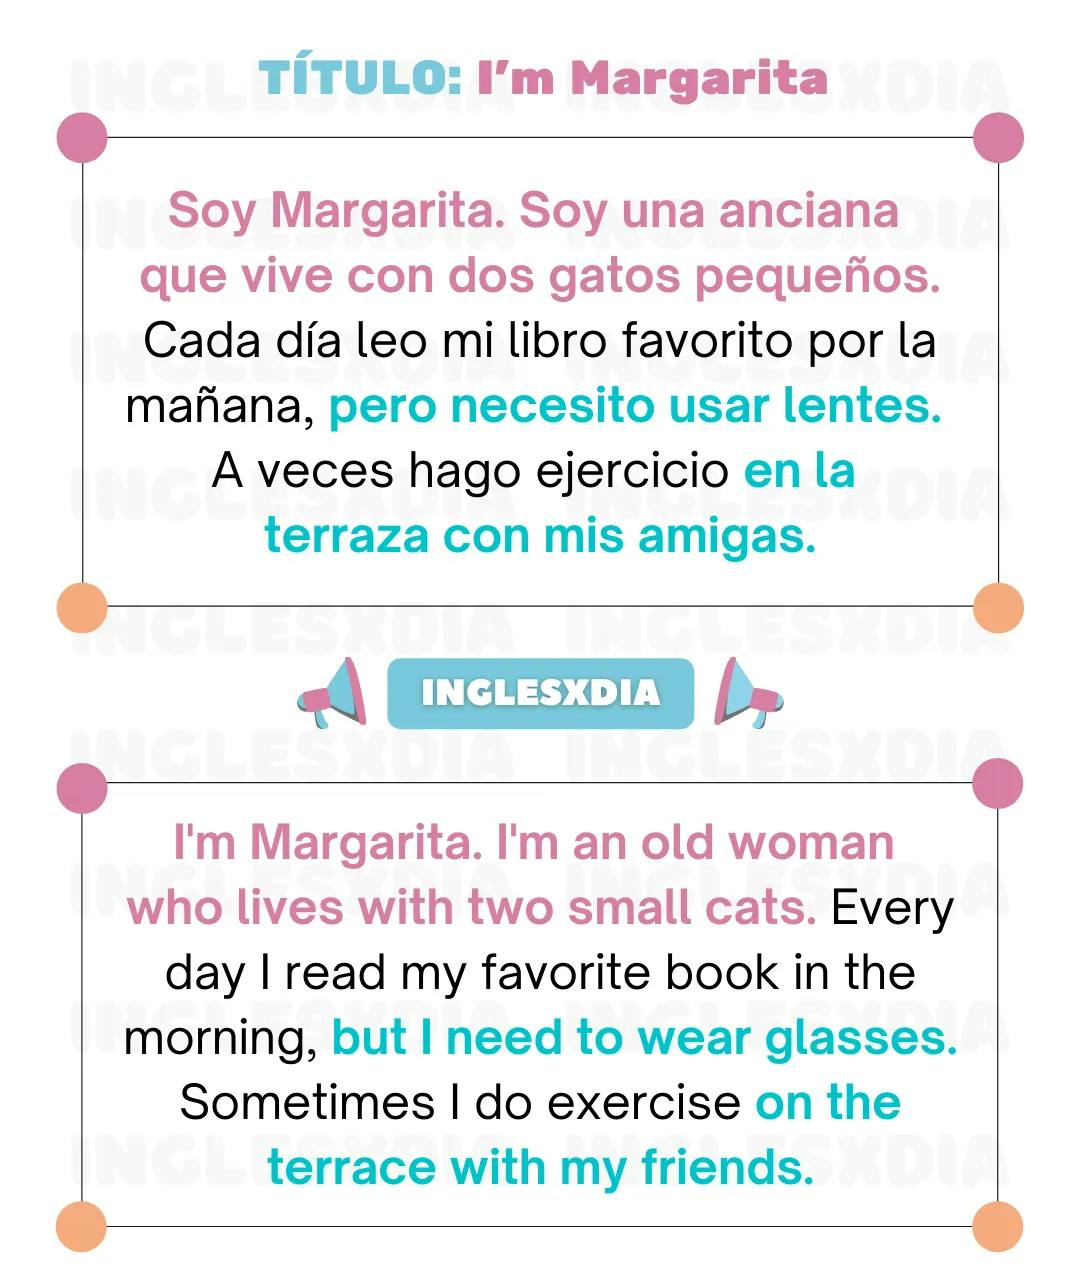 Curso de inglés en línea: Lectura corta · I'm Margarita